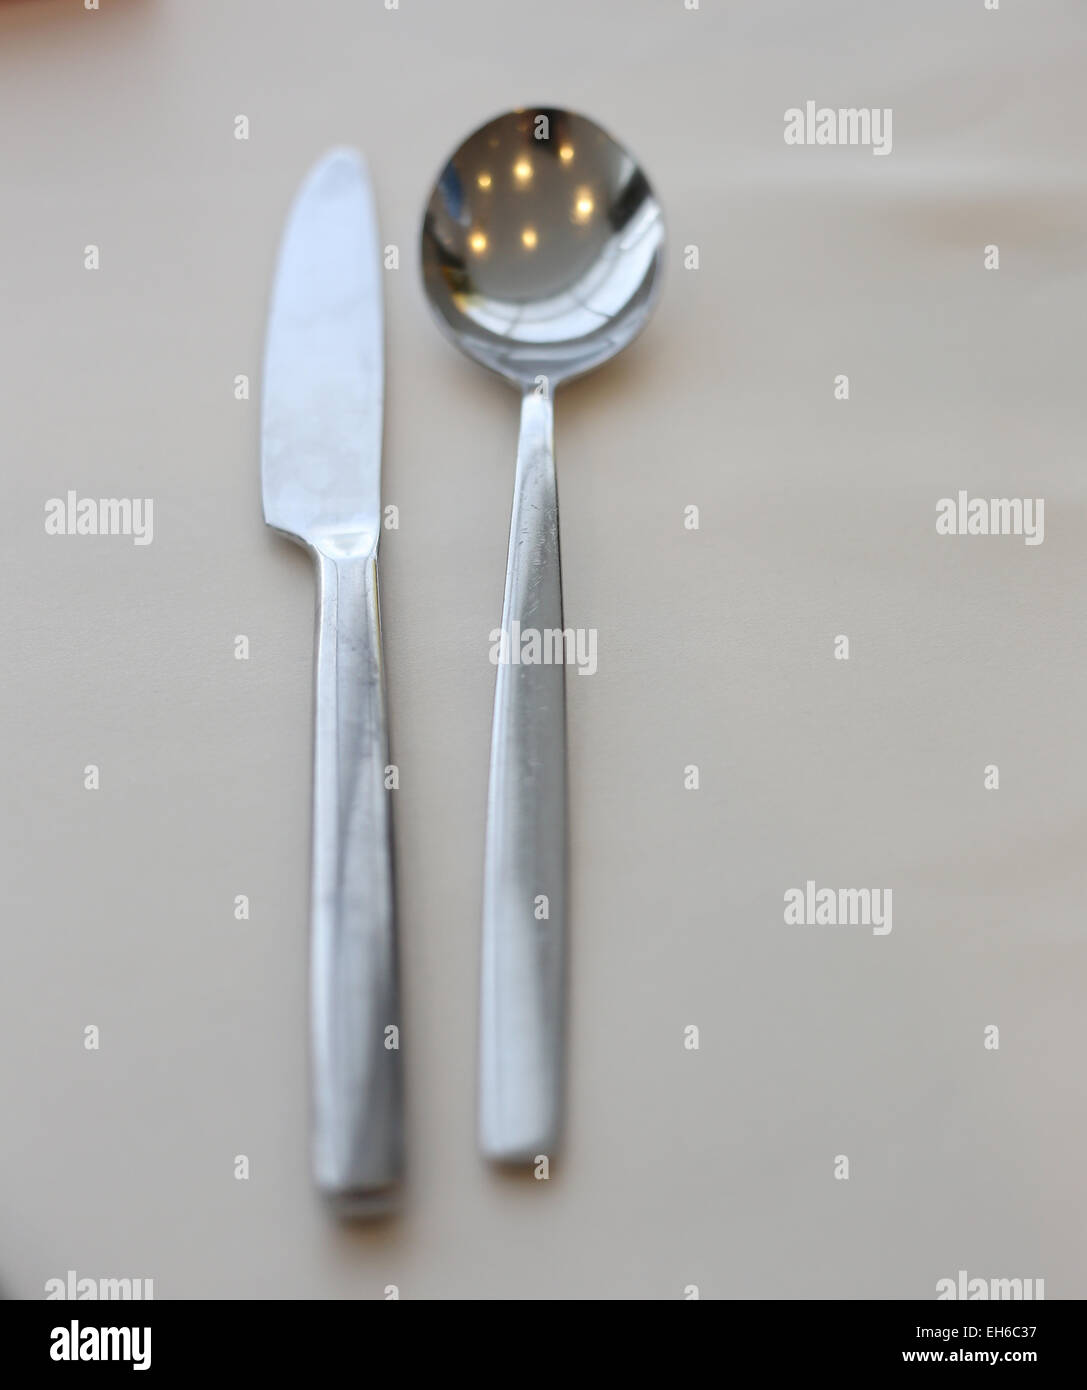 Cucharas y cuchillos se colocan sobre la mesa. Foto de stock